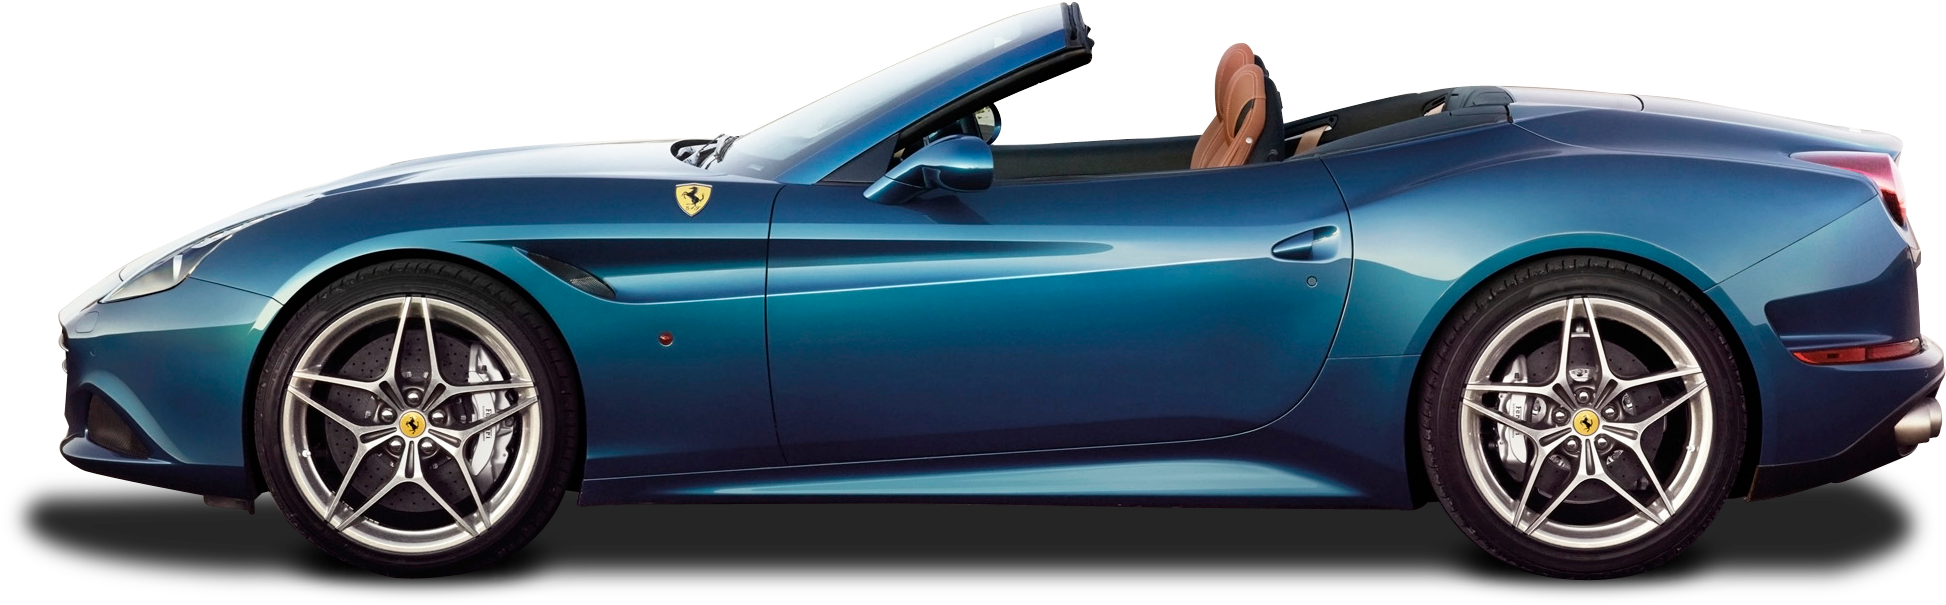 Ferrari Portofino PNG Image Background